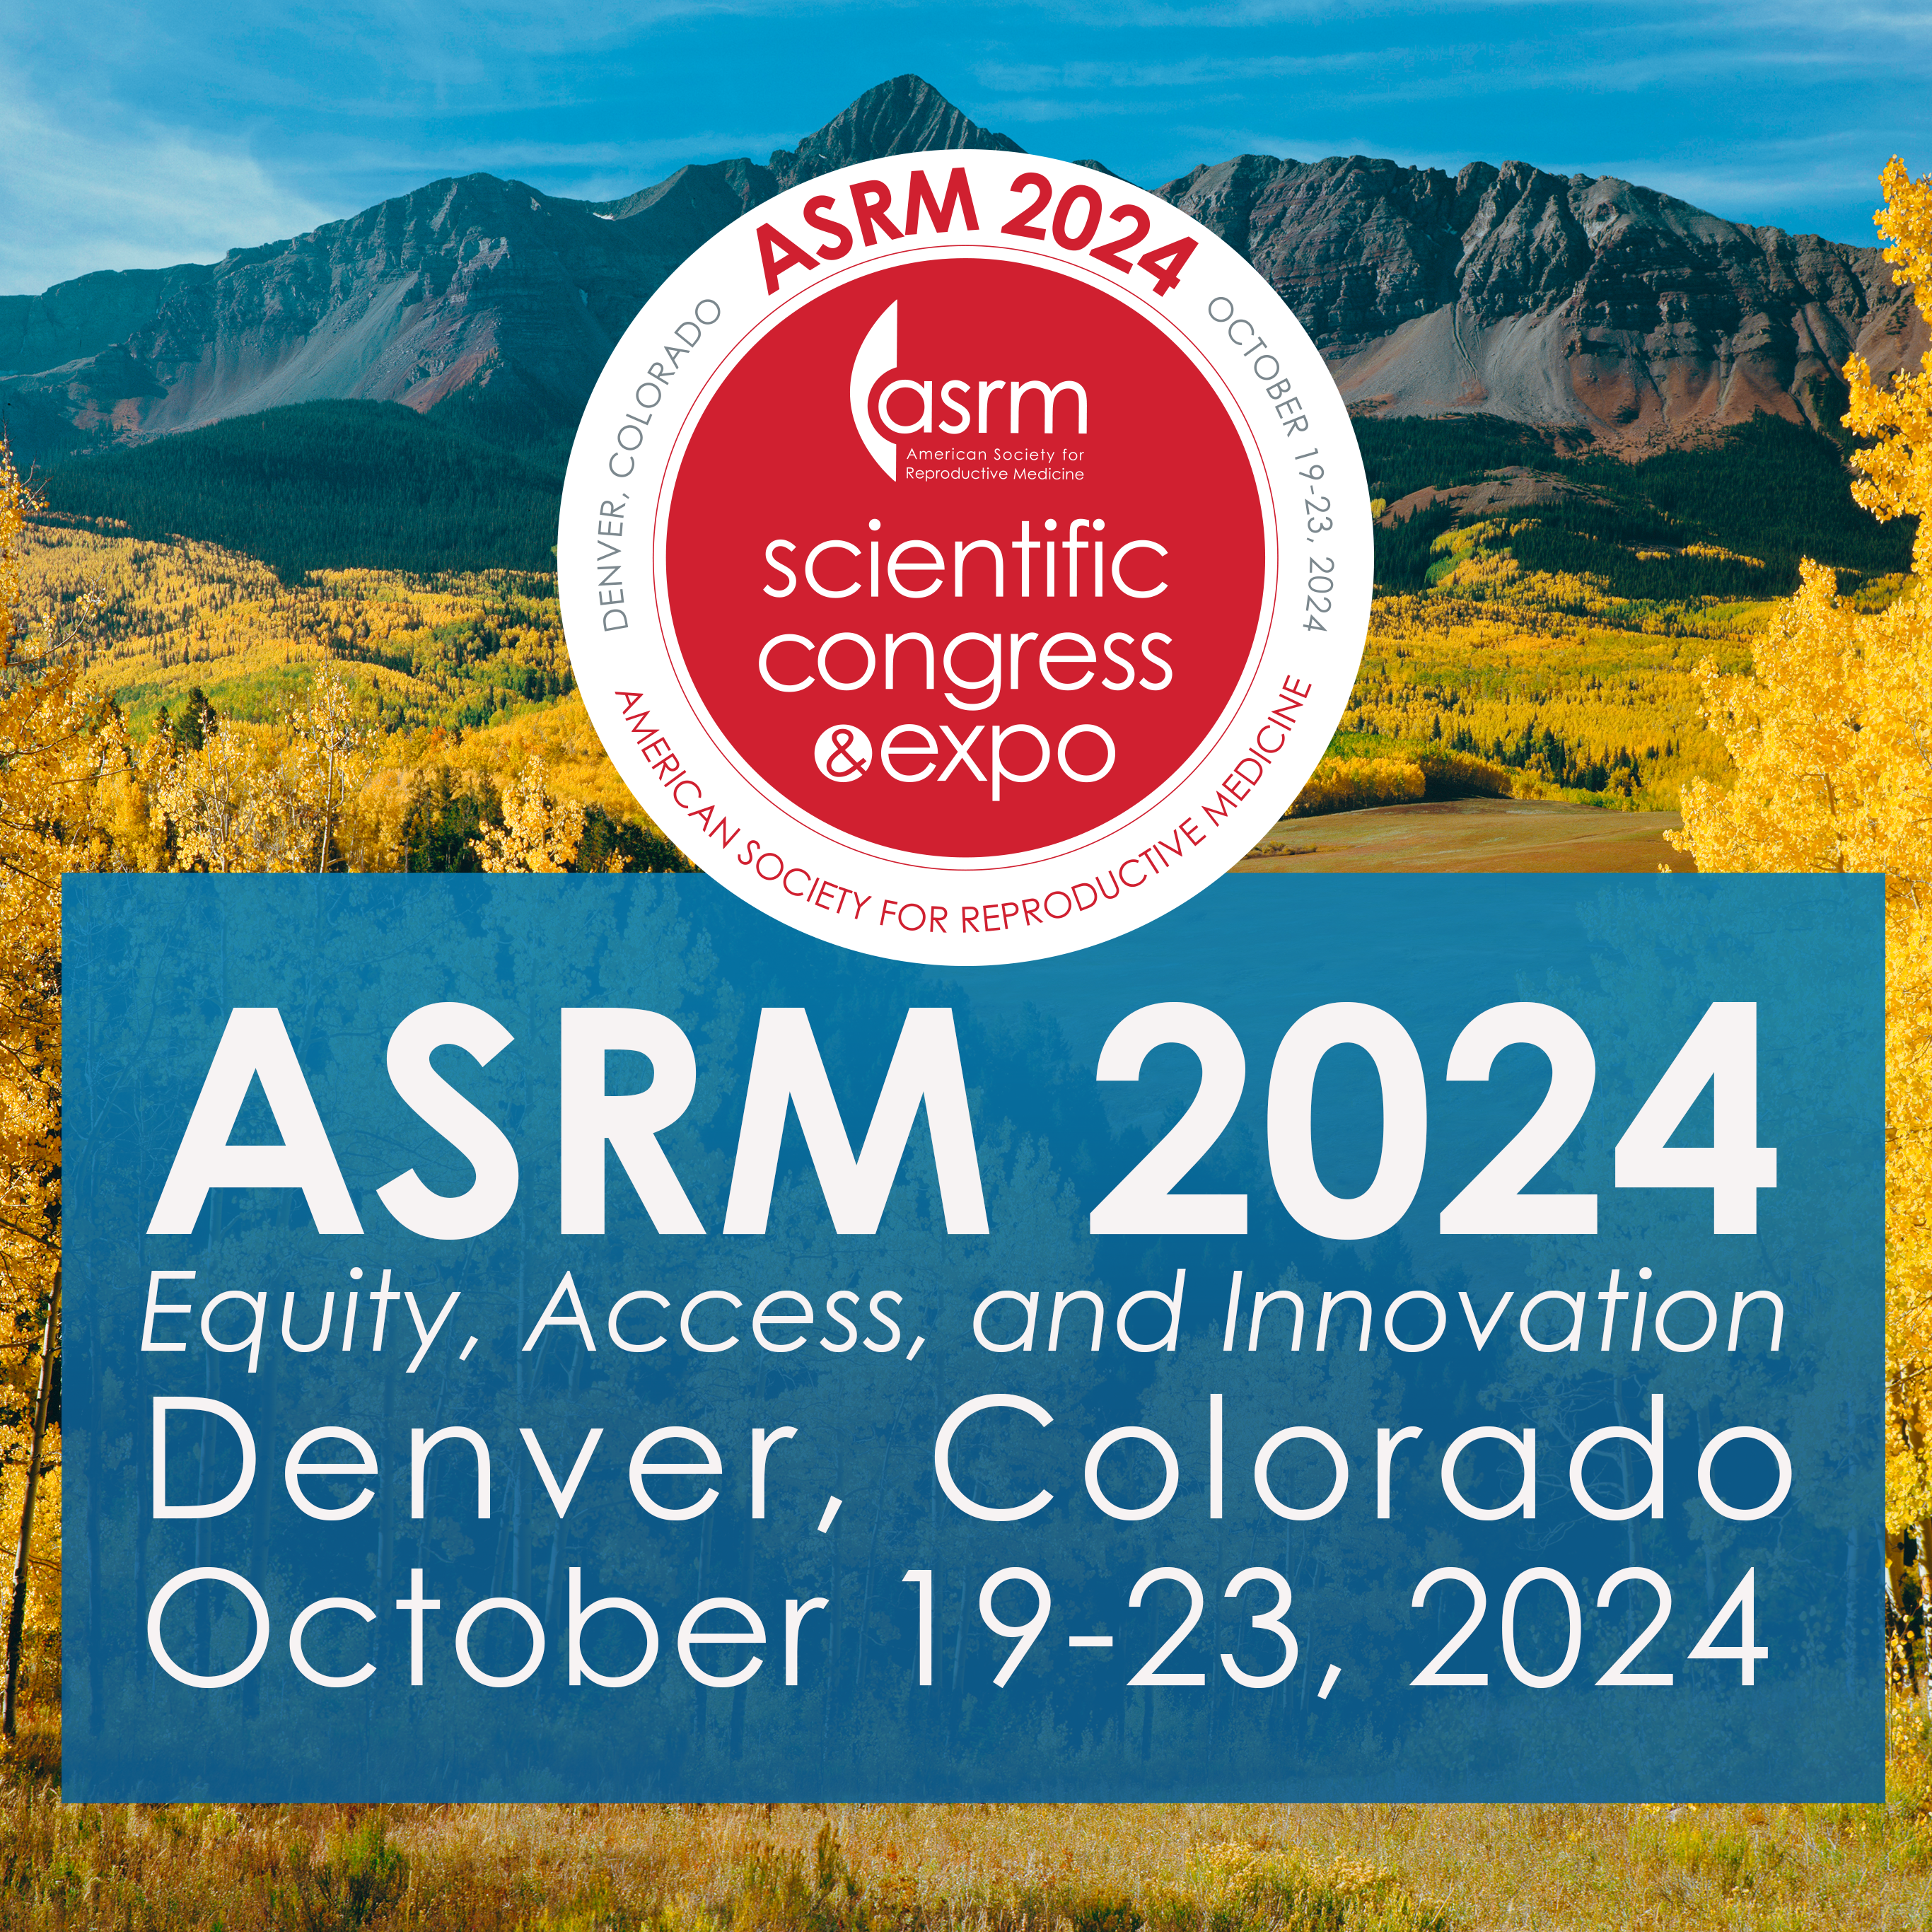 ASRM 2024 Scientific Congress & Expo